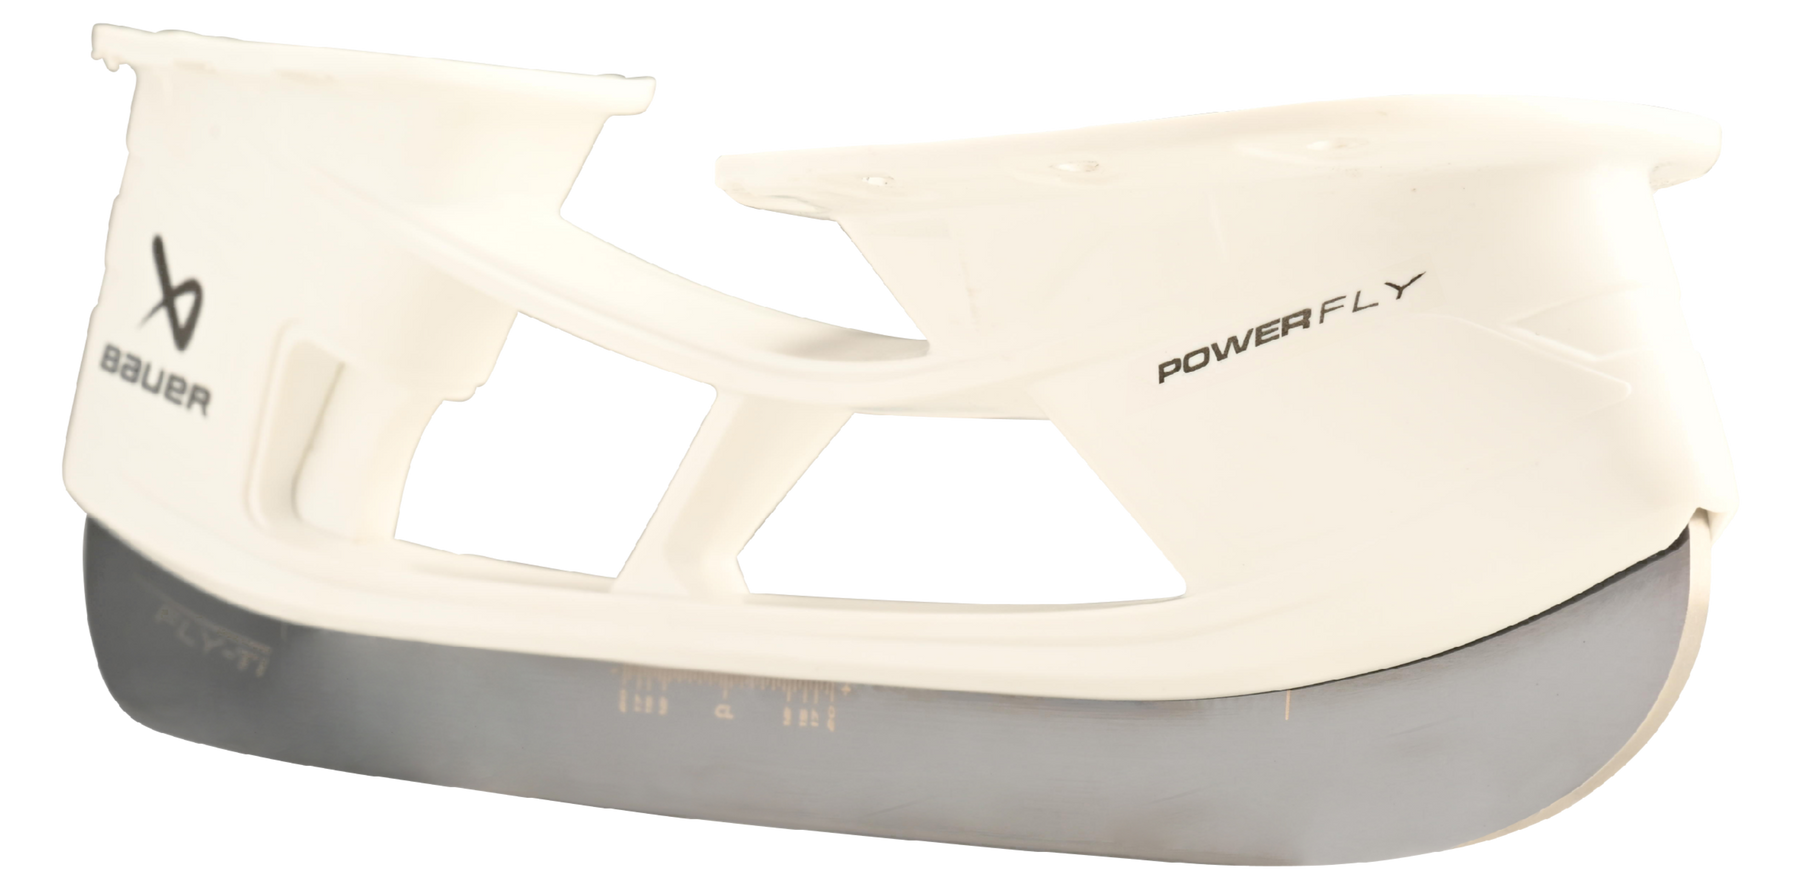 Bauer Powerfly Holder